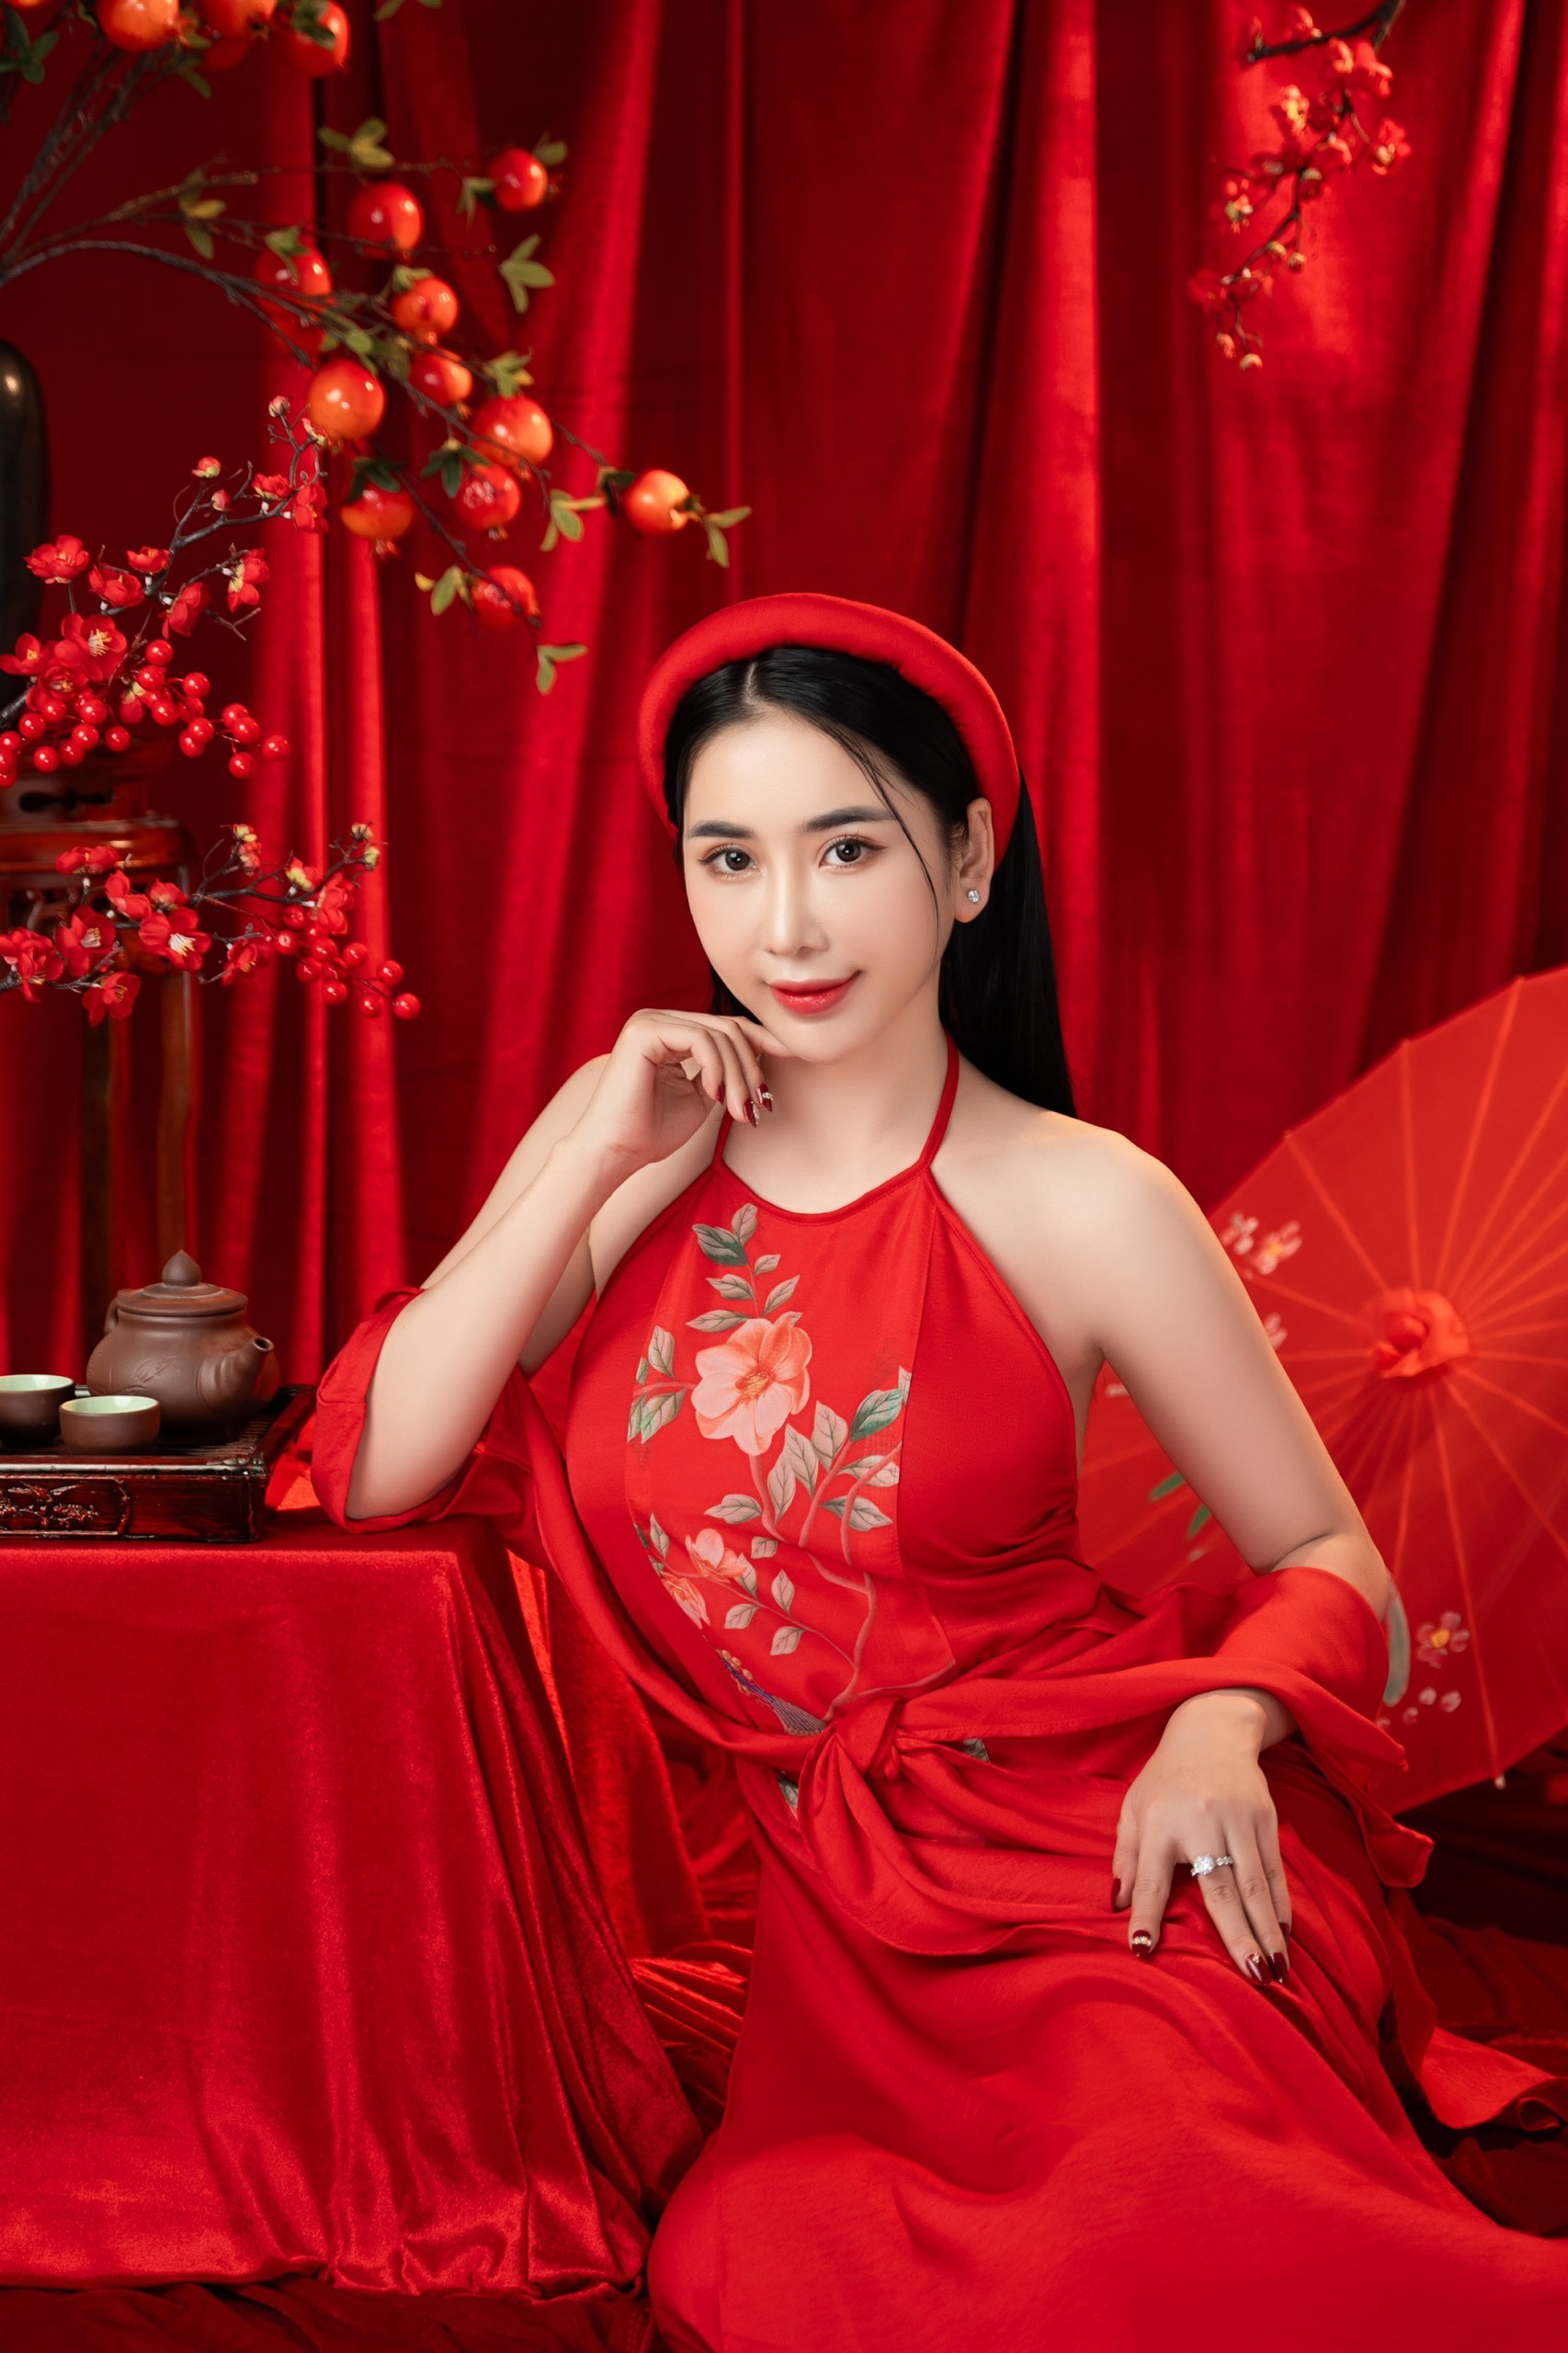 Hoa hậu Trịnh Thanh Hồng hóa nàng xuân trong bộ ảnh chào năm mới